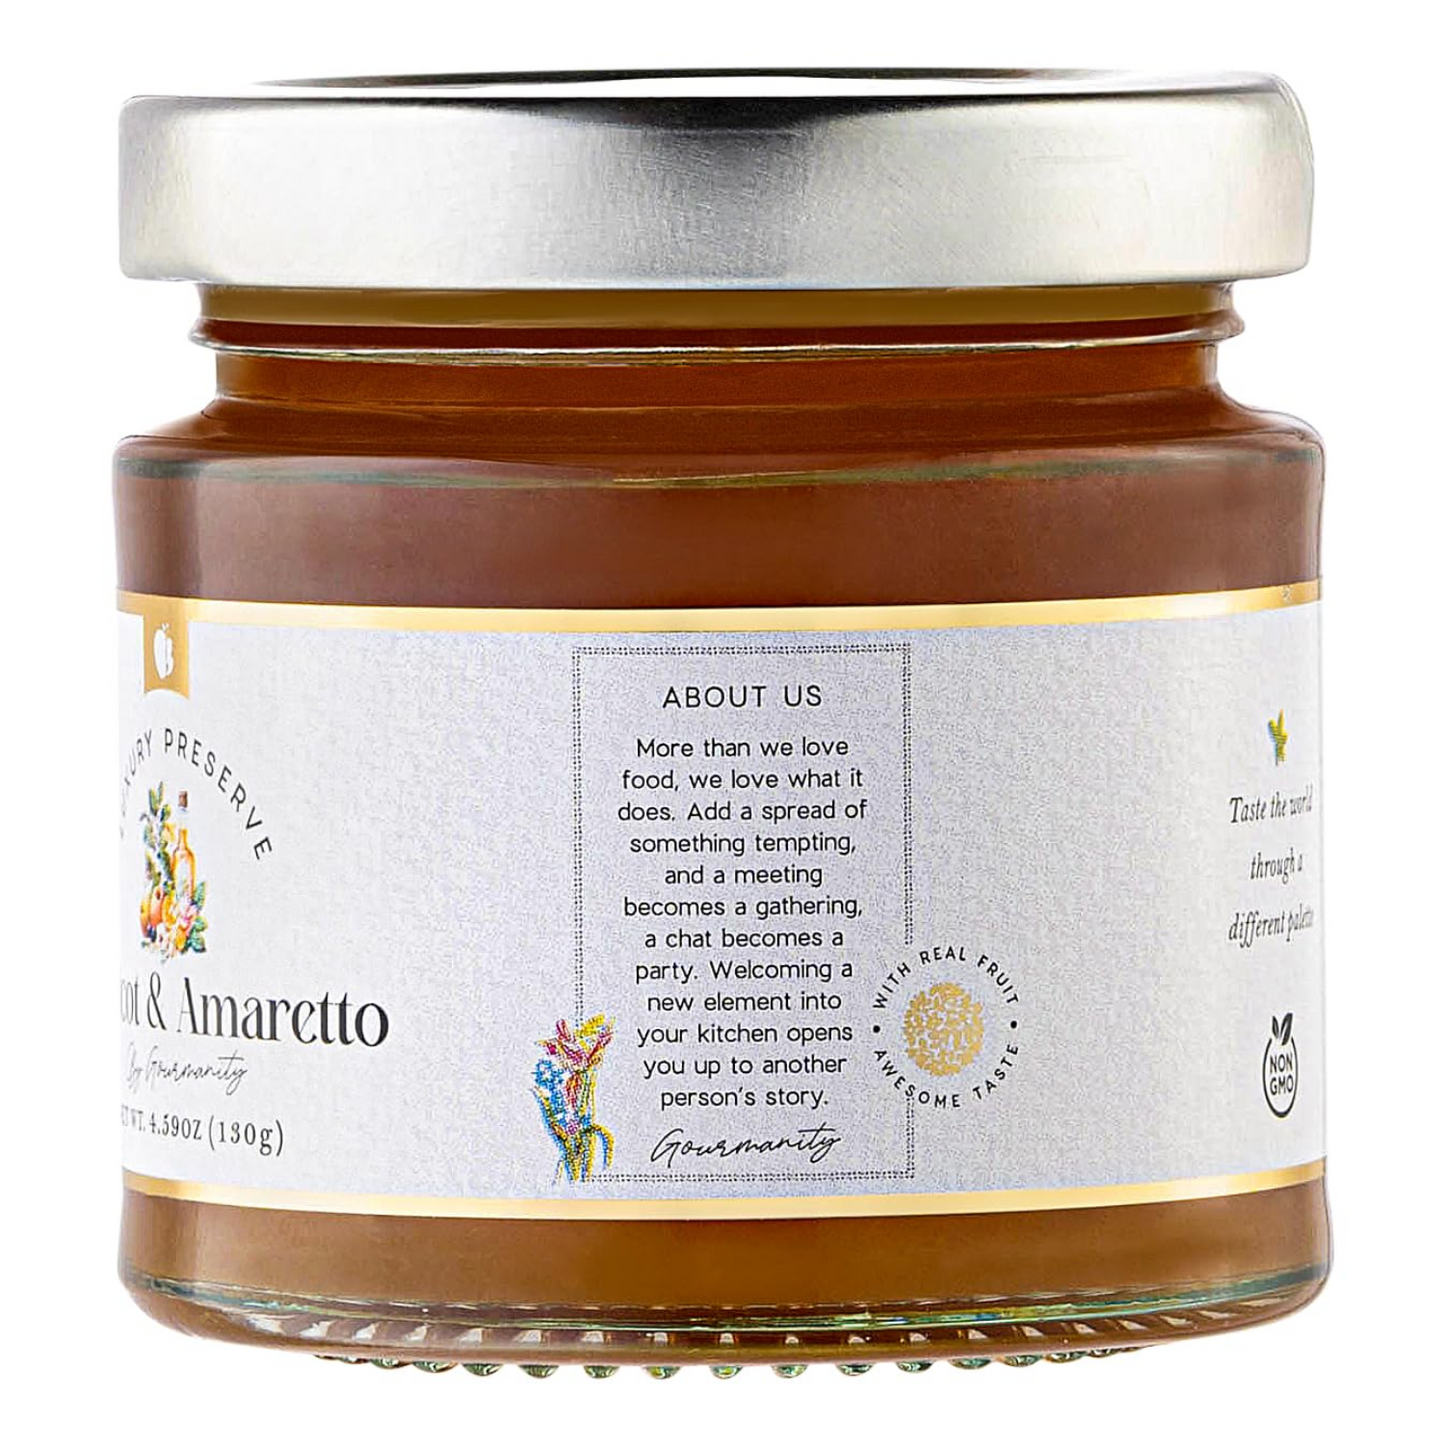 Gourmanity Luxury Preserve Apricot & Amaretto Jam 4.59oz - Gourmanity